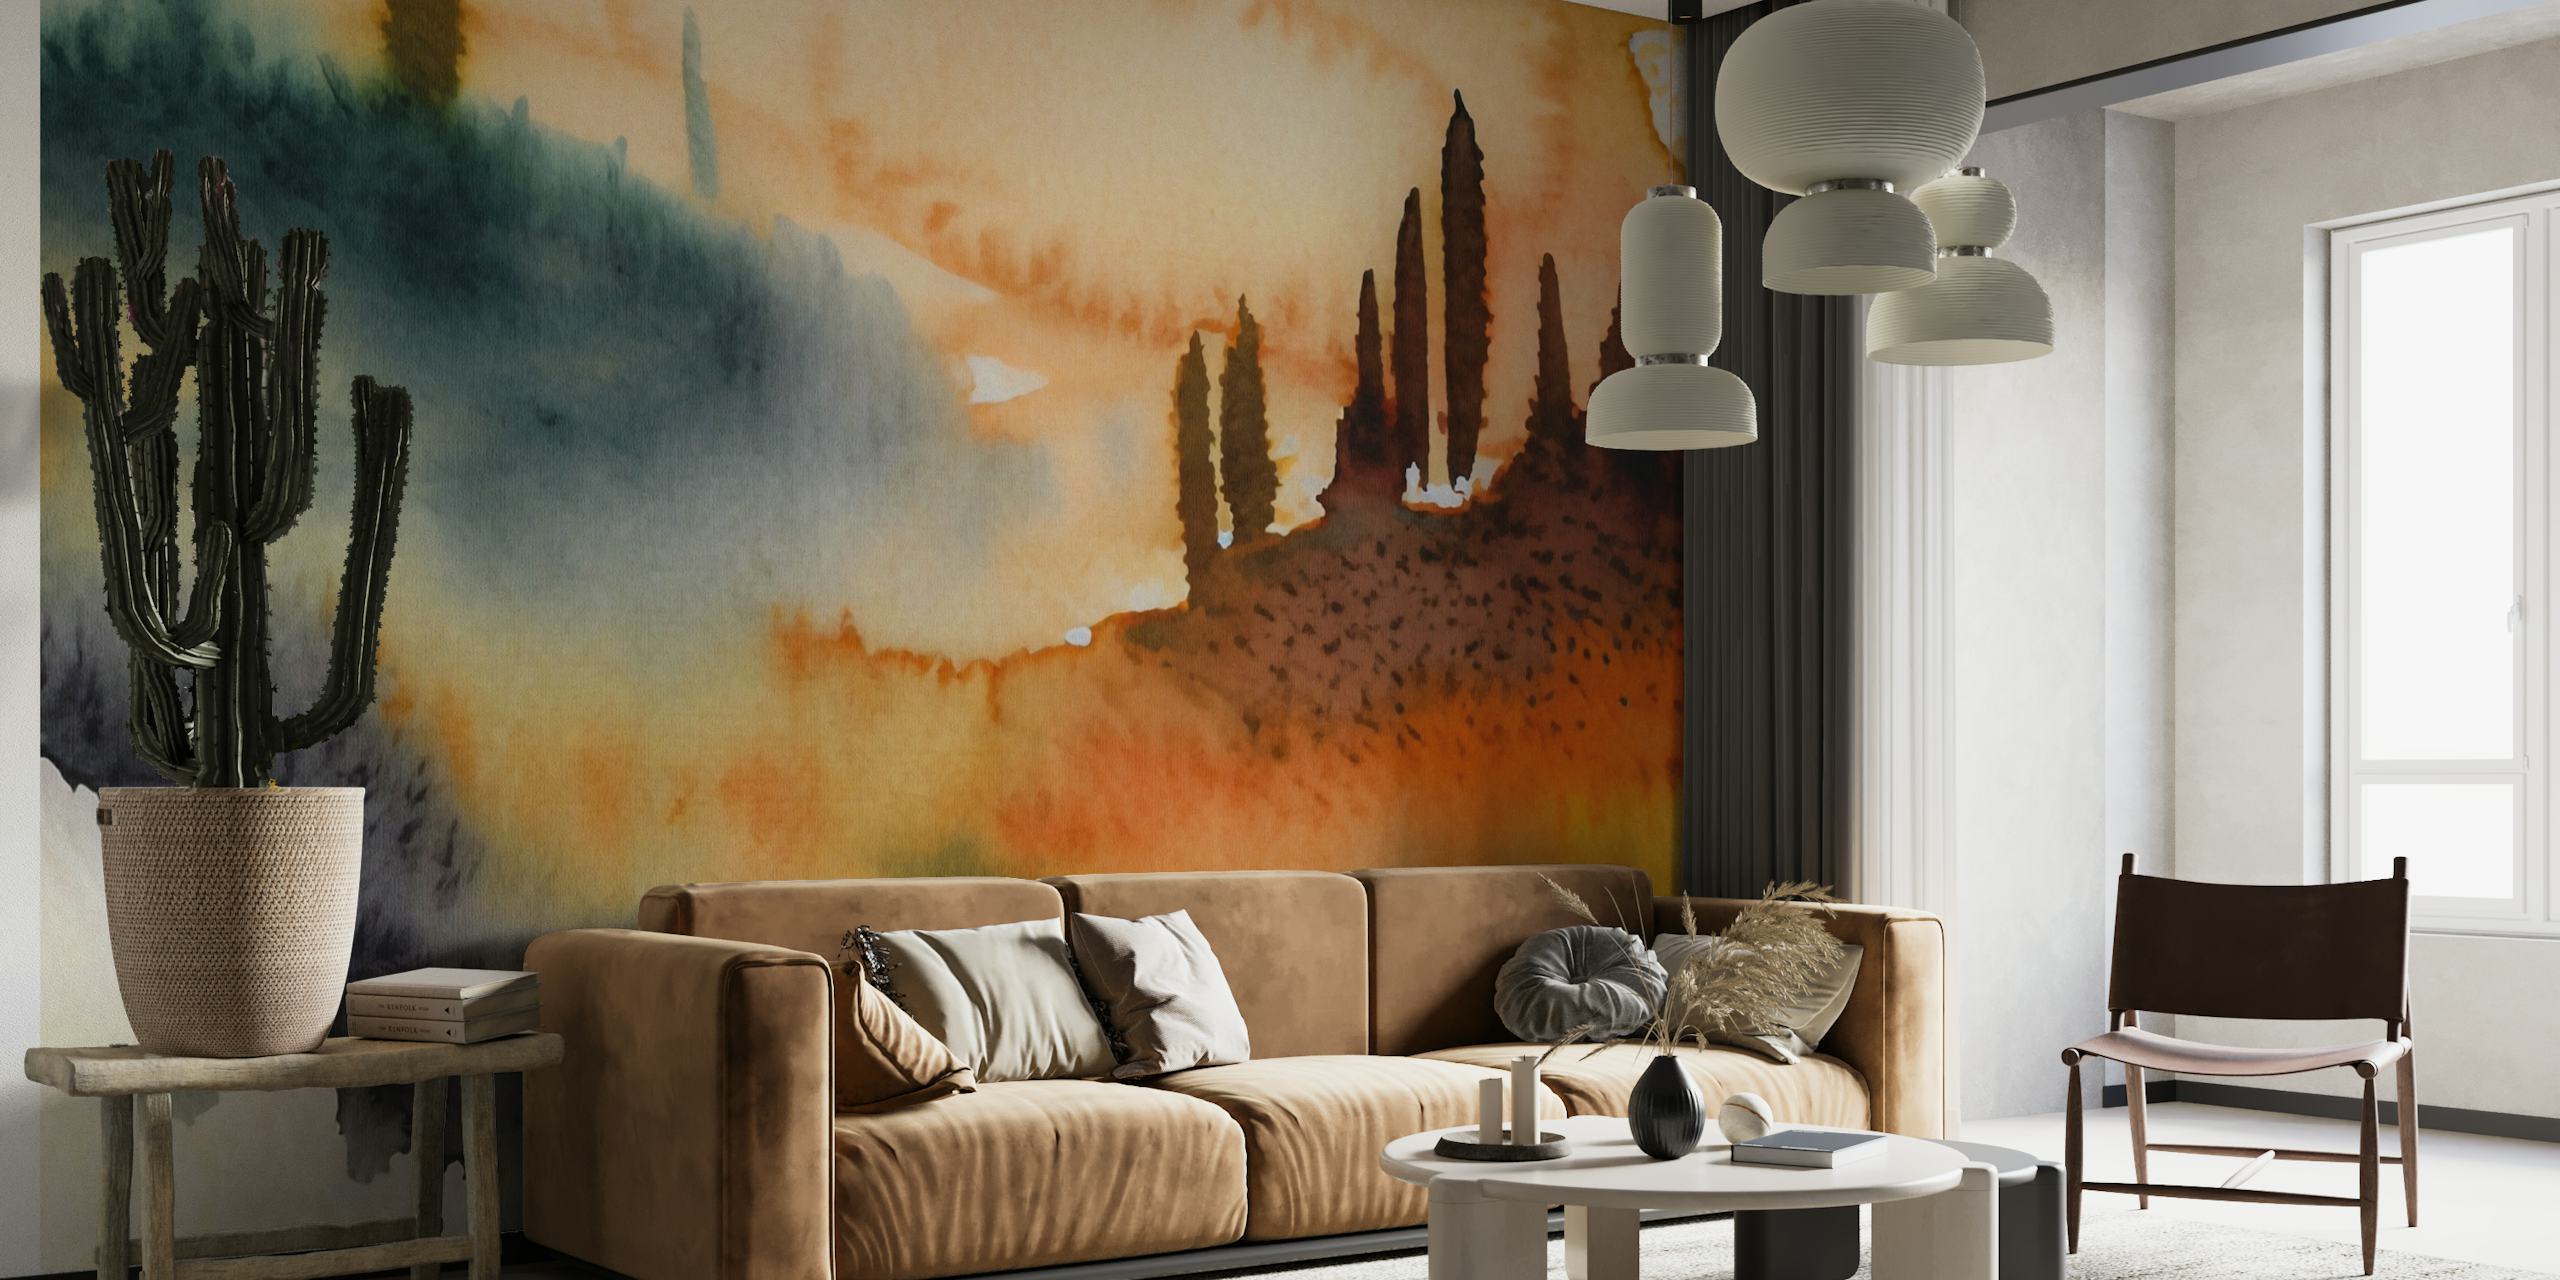 Fotomural vinílico de parede em aquarela da zona rural da Toscana com tons quentes do pôr do sol e colinas